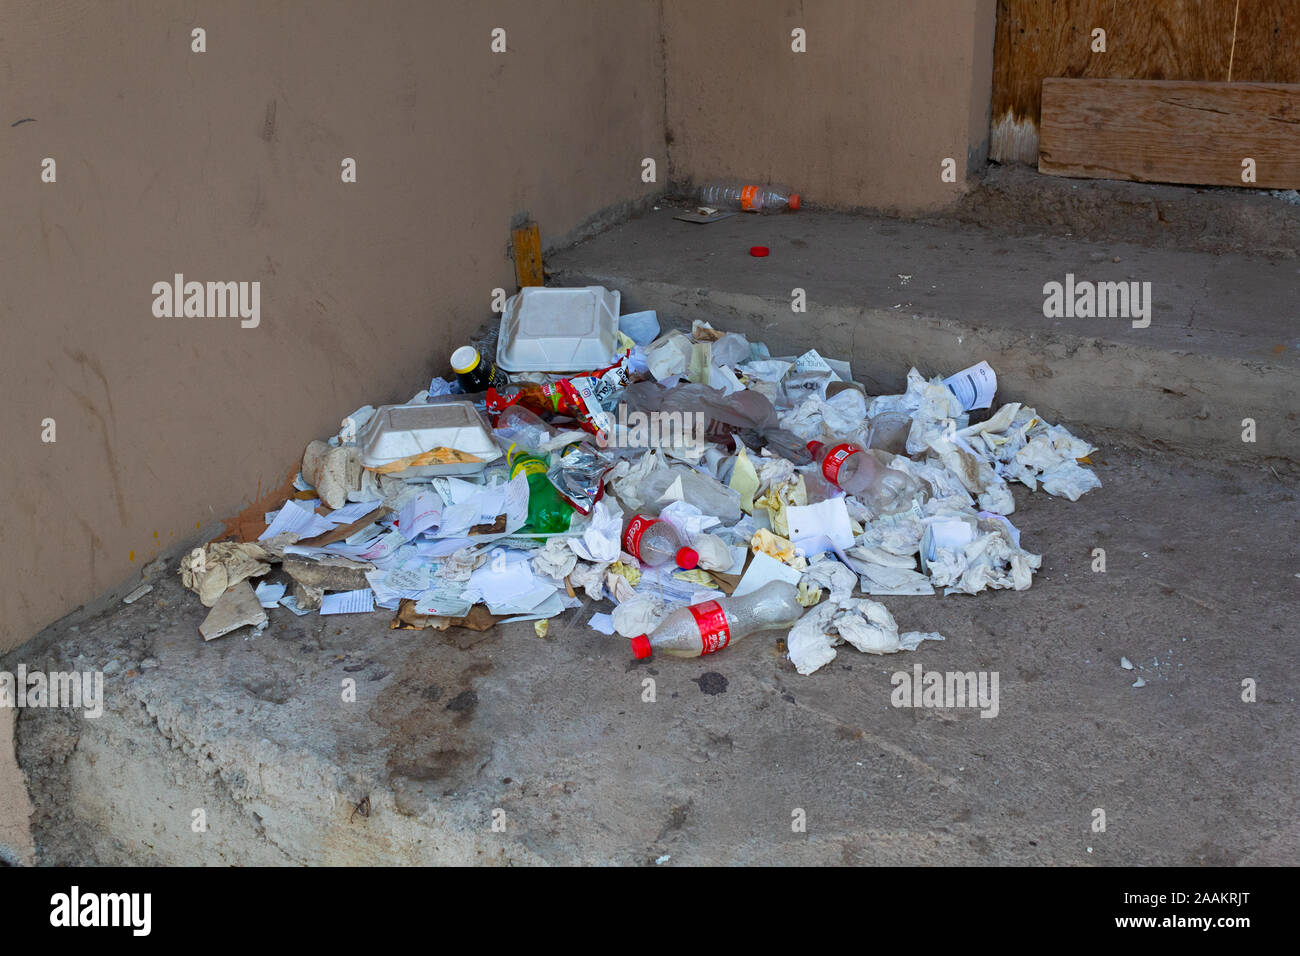 Culiacan, Sinaloa, Mexiko - 05 November 2019: Müll bis auf dem Bürgersteig angehäuft, ein Zeichen für die schlechte Ausbildung der Bevölkerung über Hygiene Stockfoto